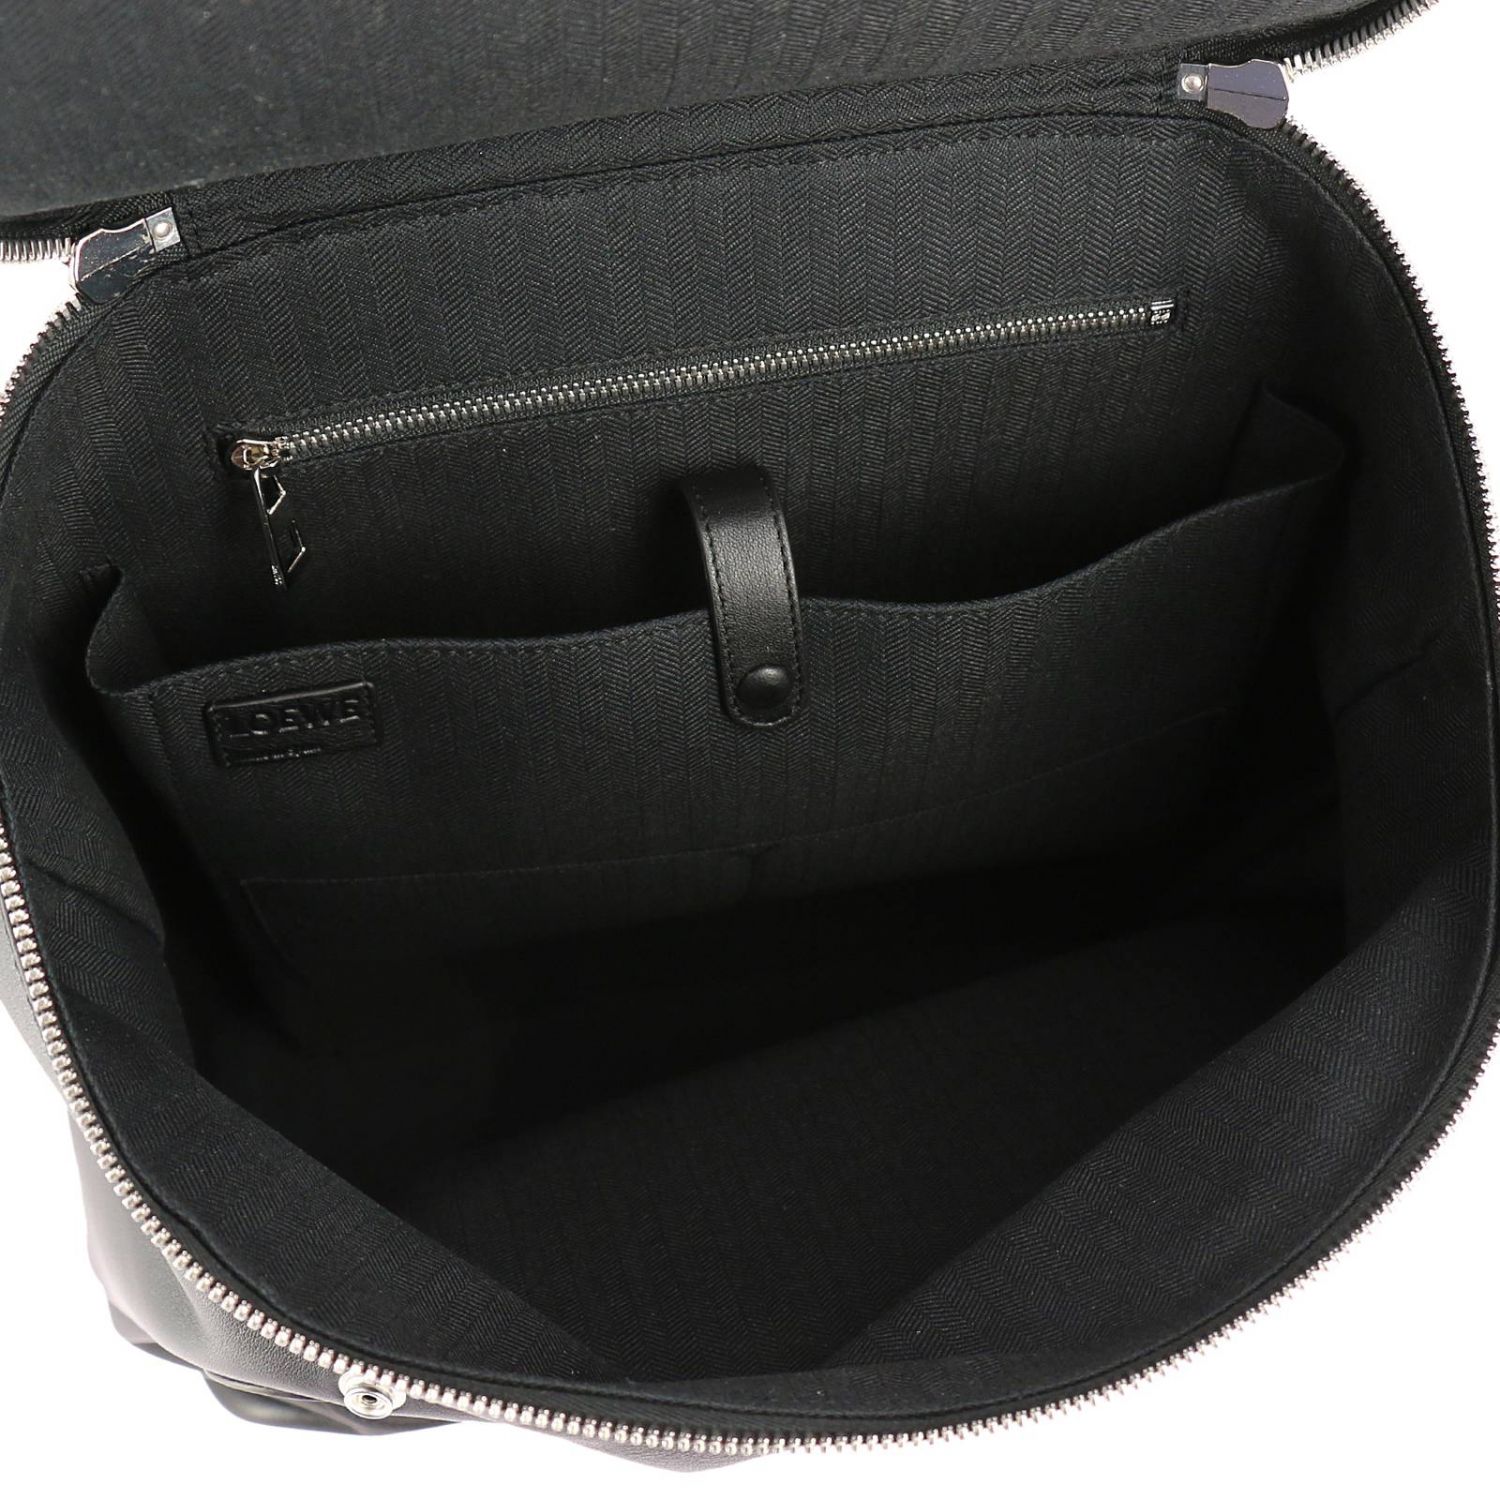 Loewe Outlet: Bags men | Bags Loewe Men Black | Bags Loewe 316.30.S53 ...